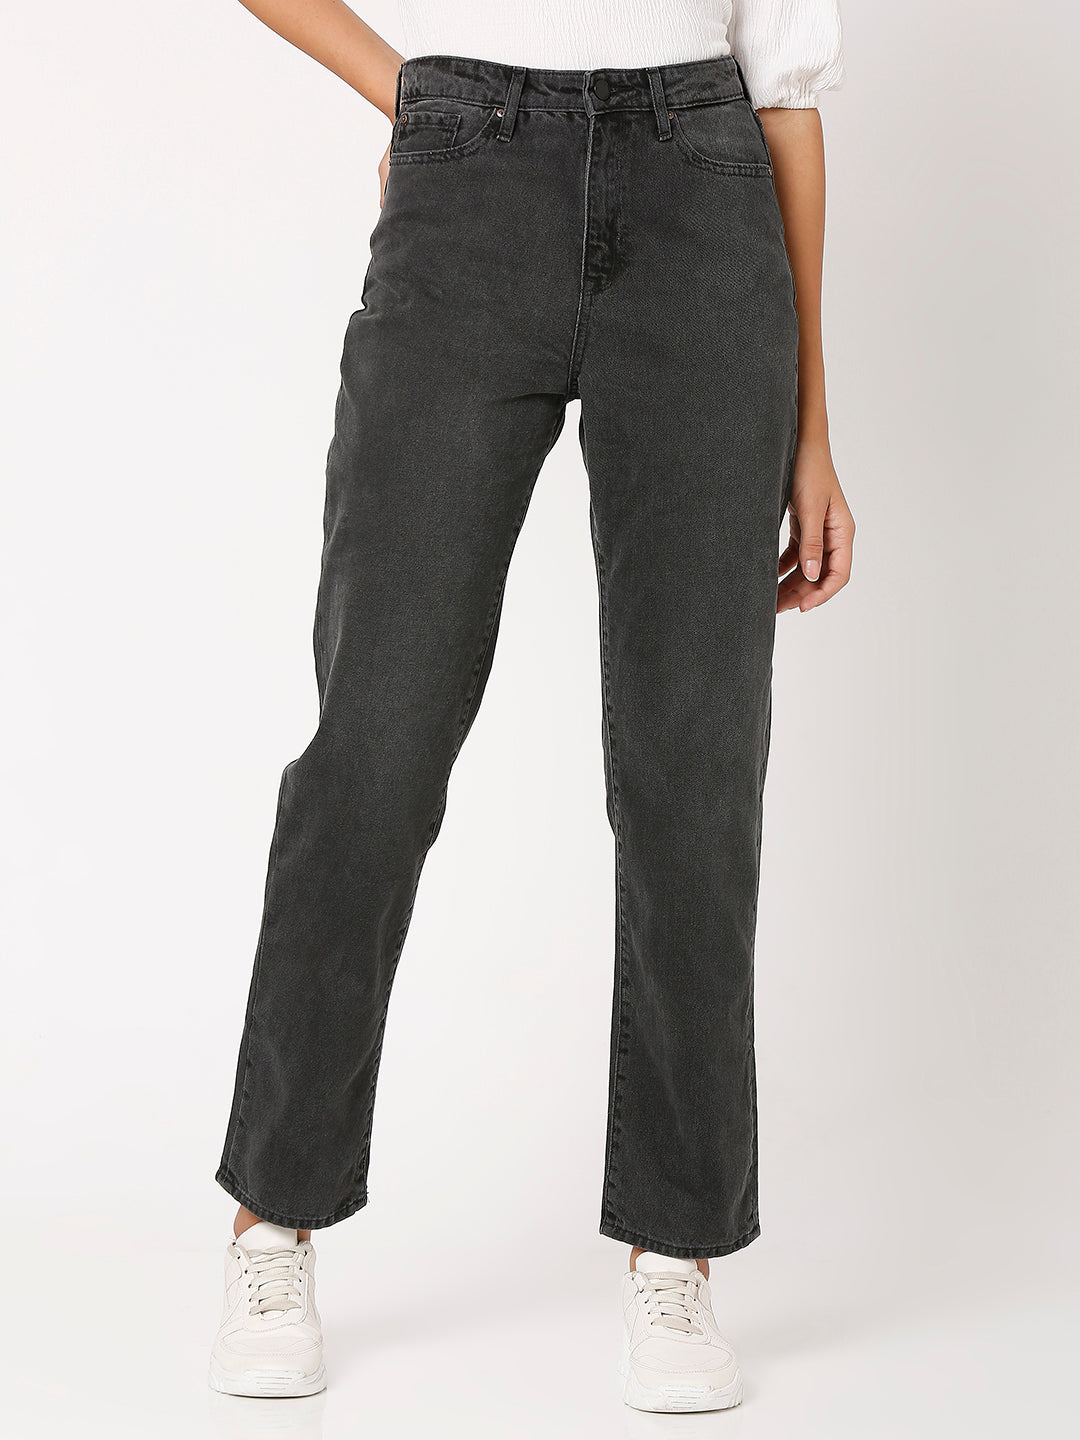 Spykar Black Straight Fit Regular Length Jeans For Women (Bella ...